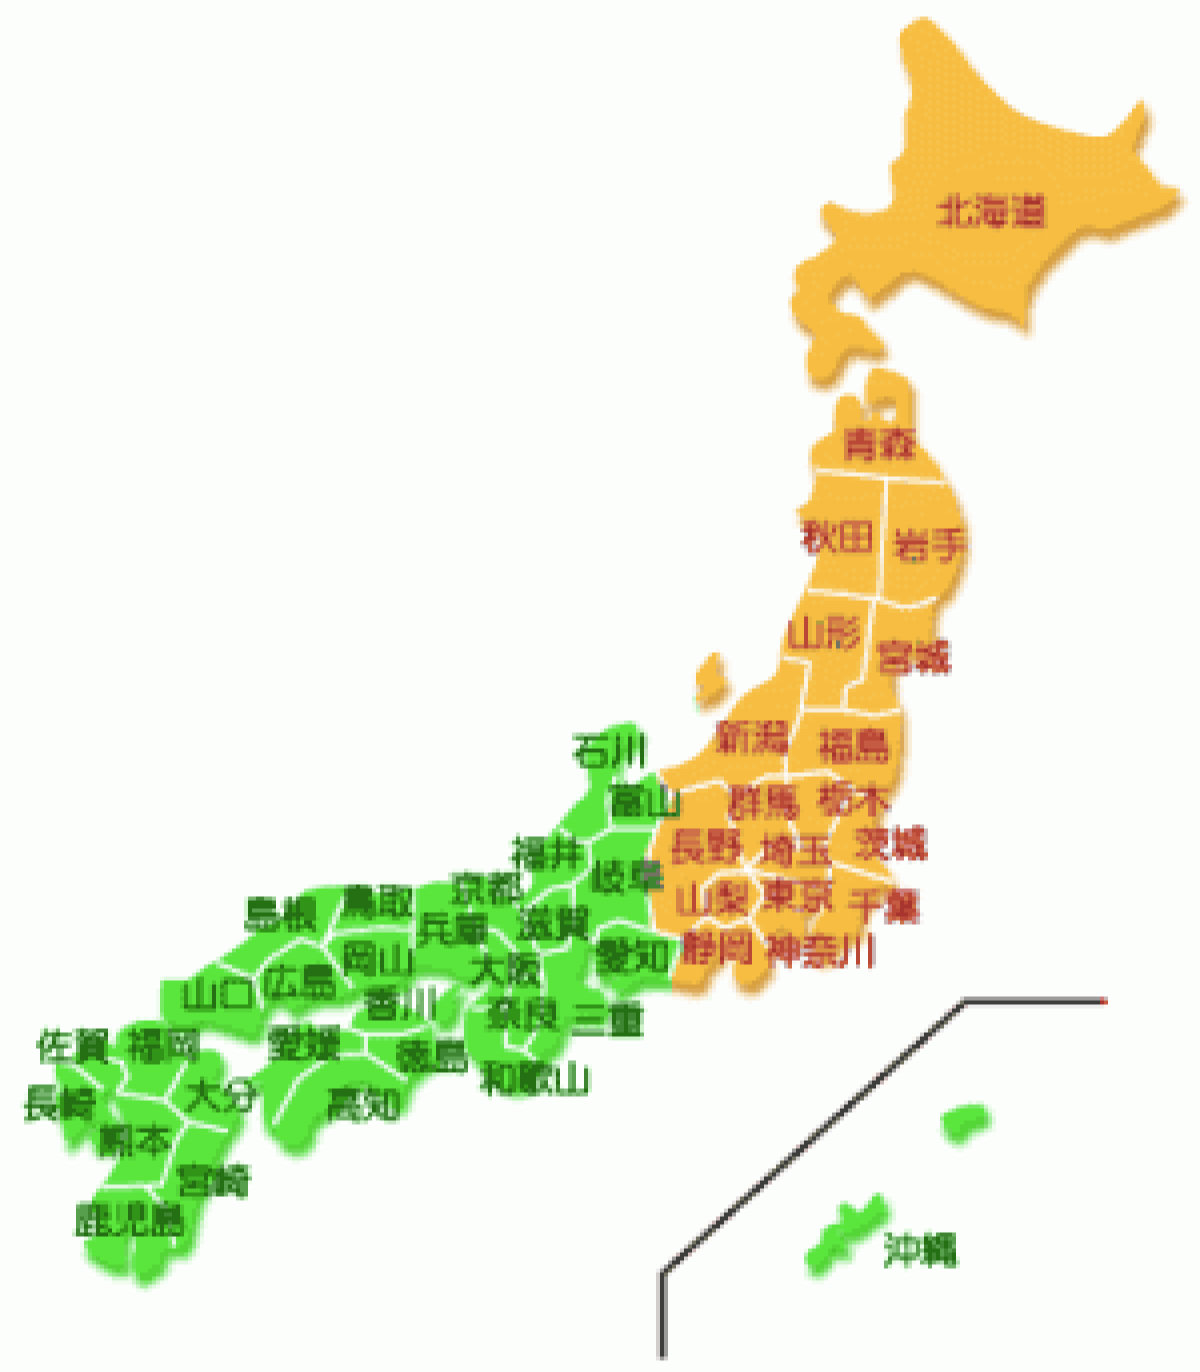 対応エリアを示した日本地図